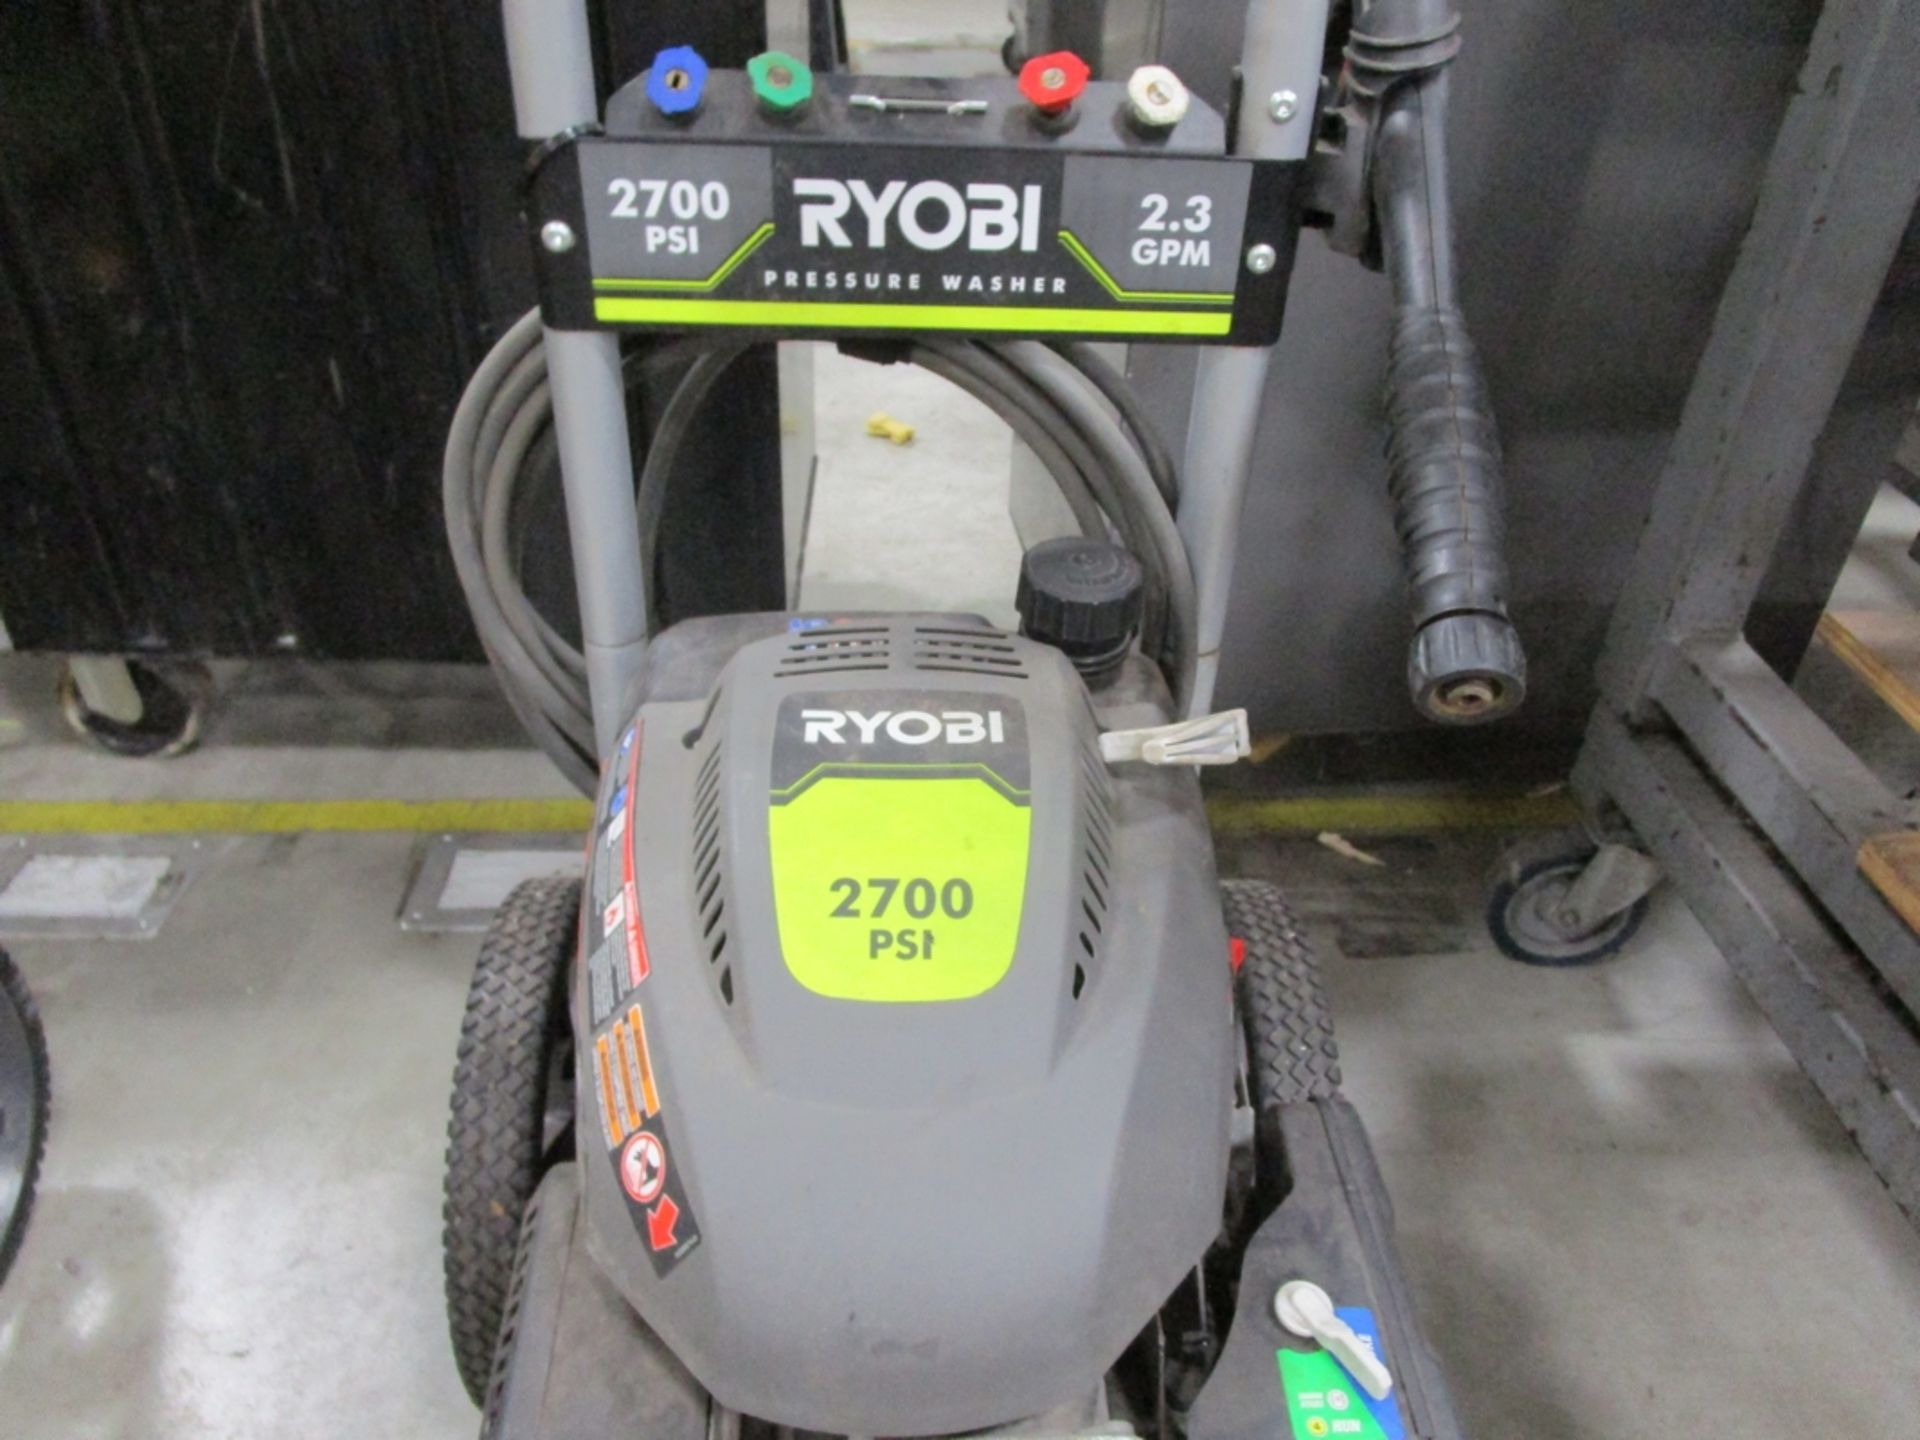 Ryobi RT862769 2700 PSI Pressure Washer - Image 2 of 4